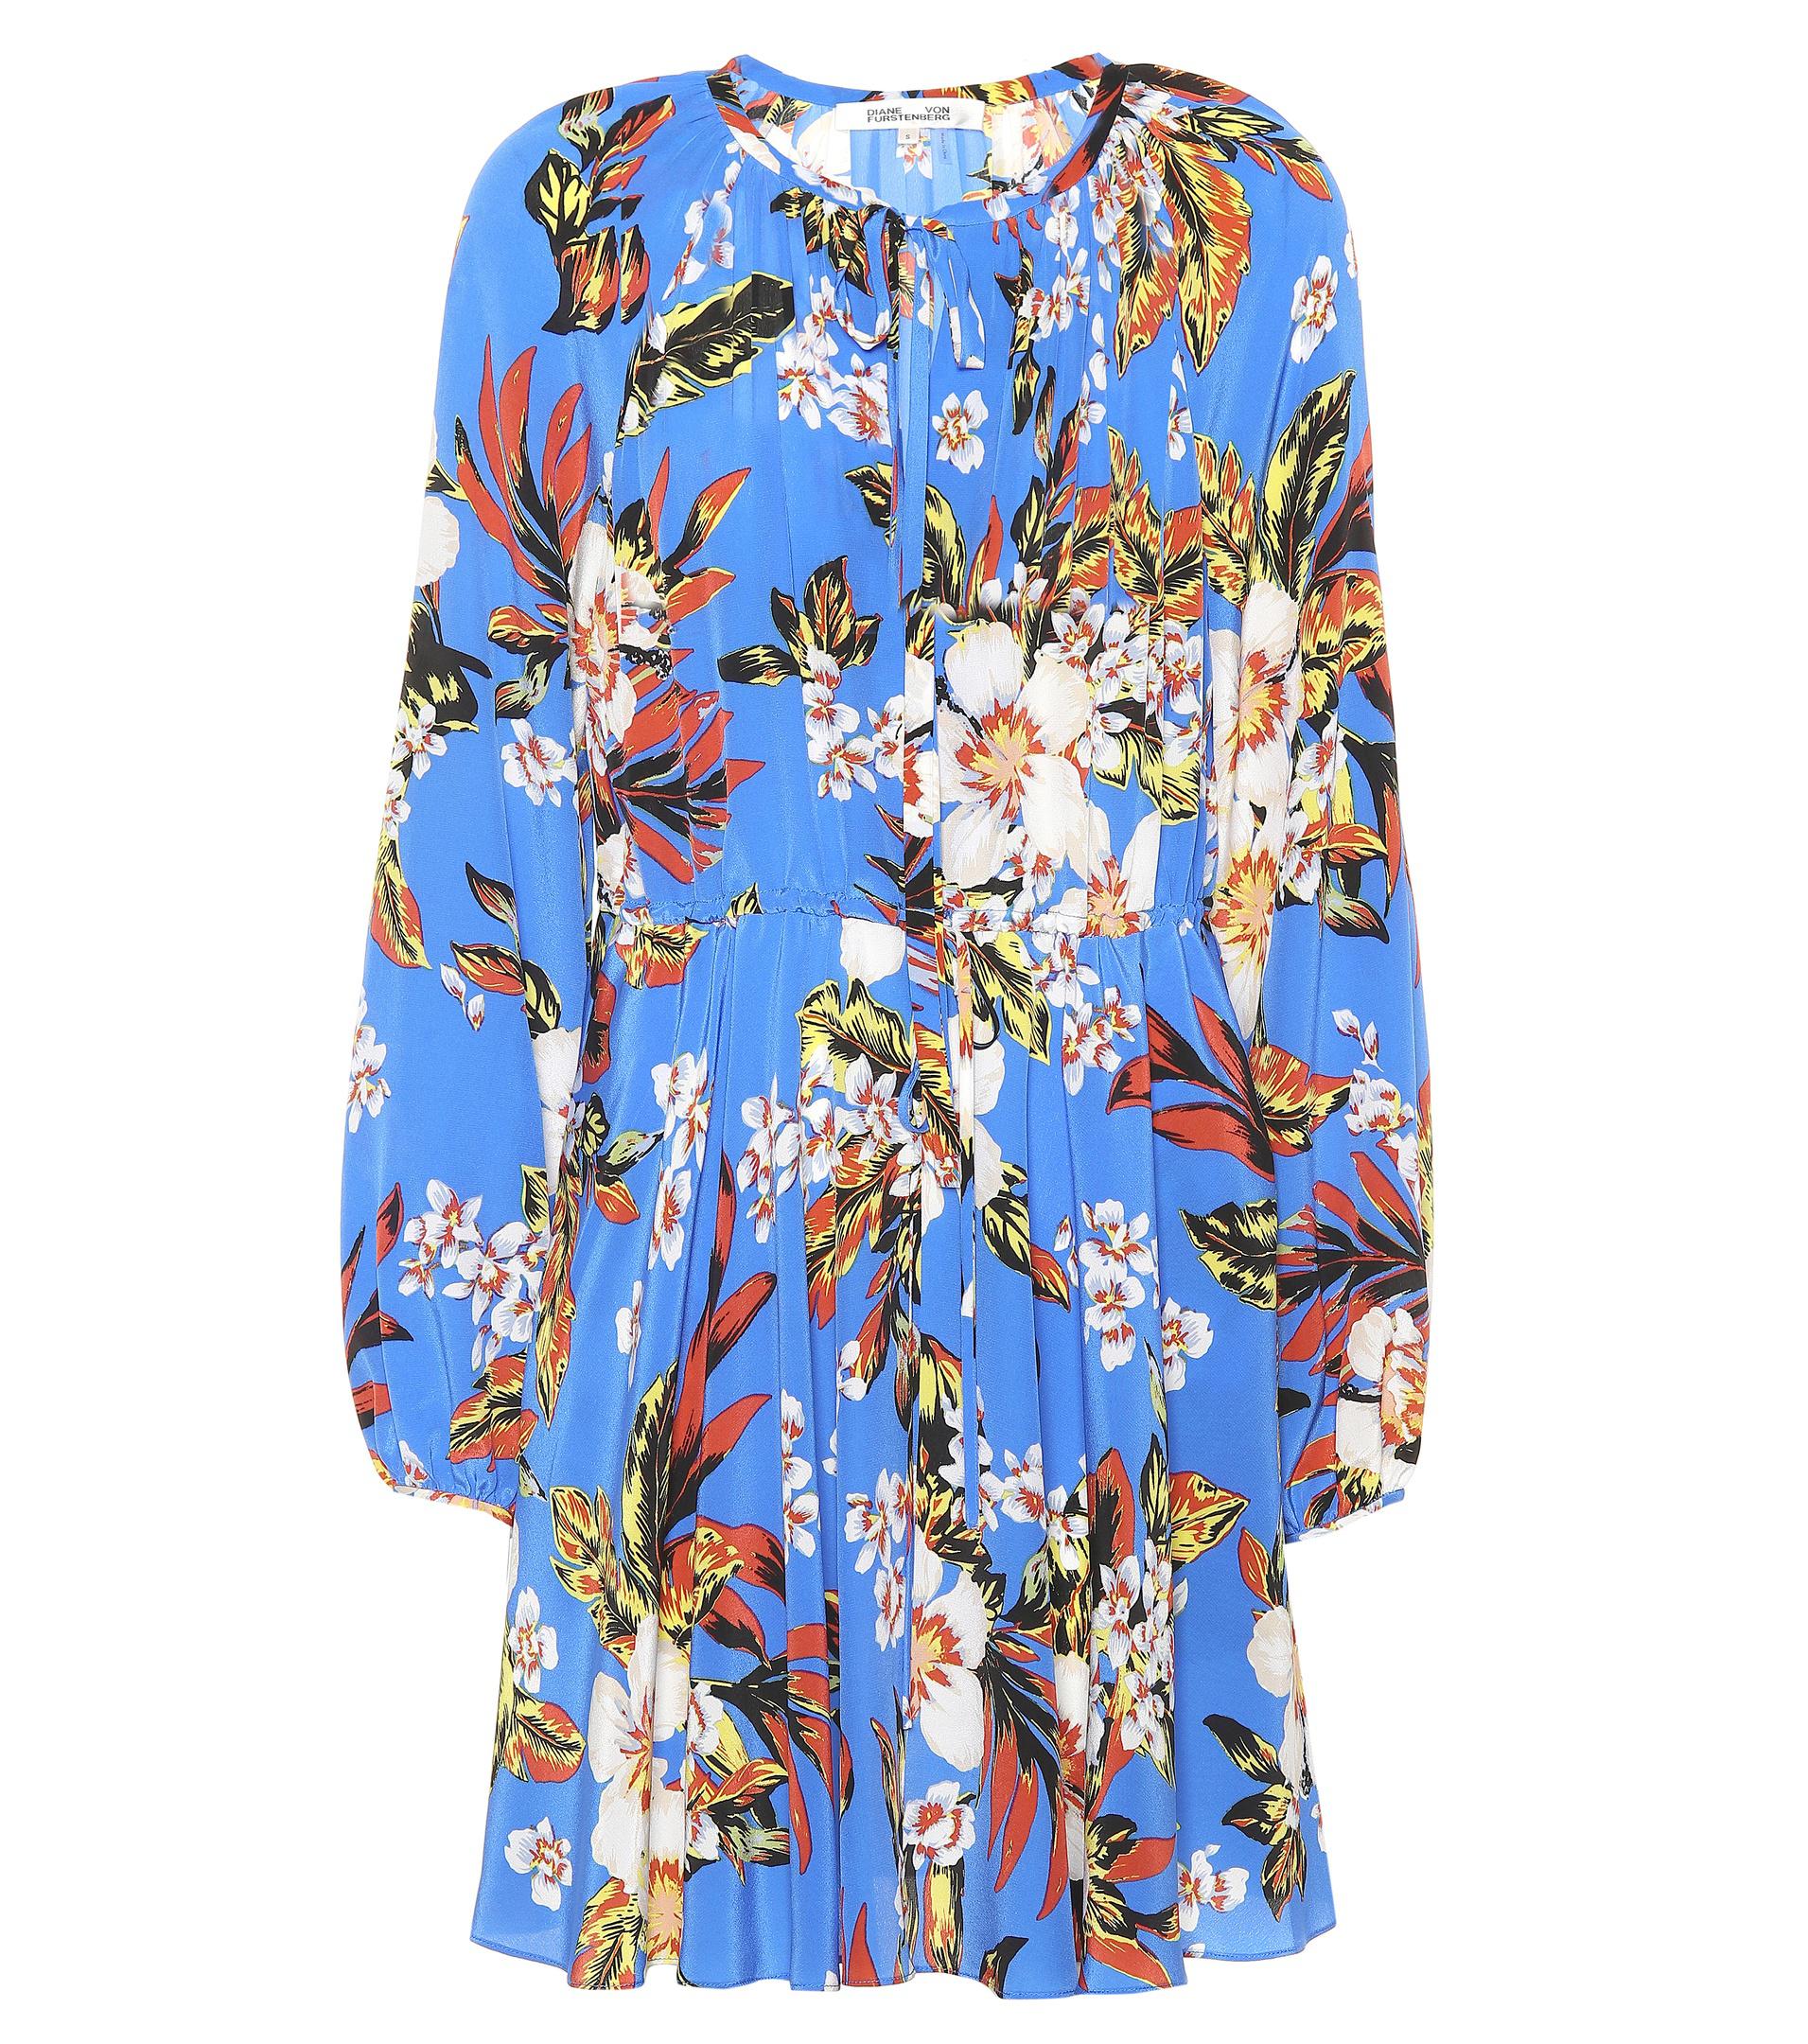 Diane von Furstenberg Floral Silk Dress in Blue - Lyst